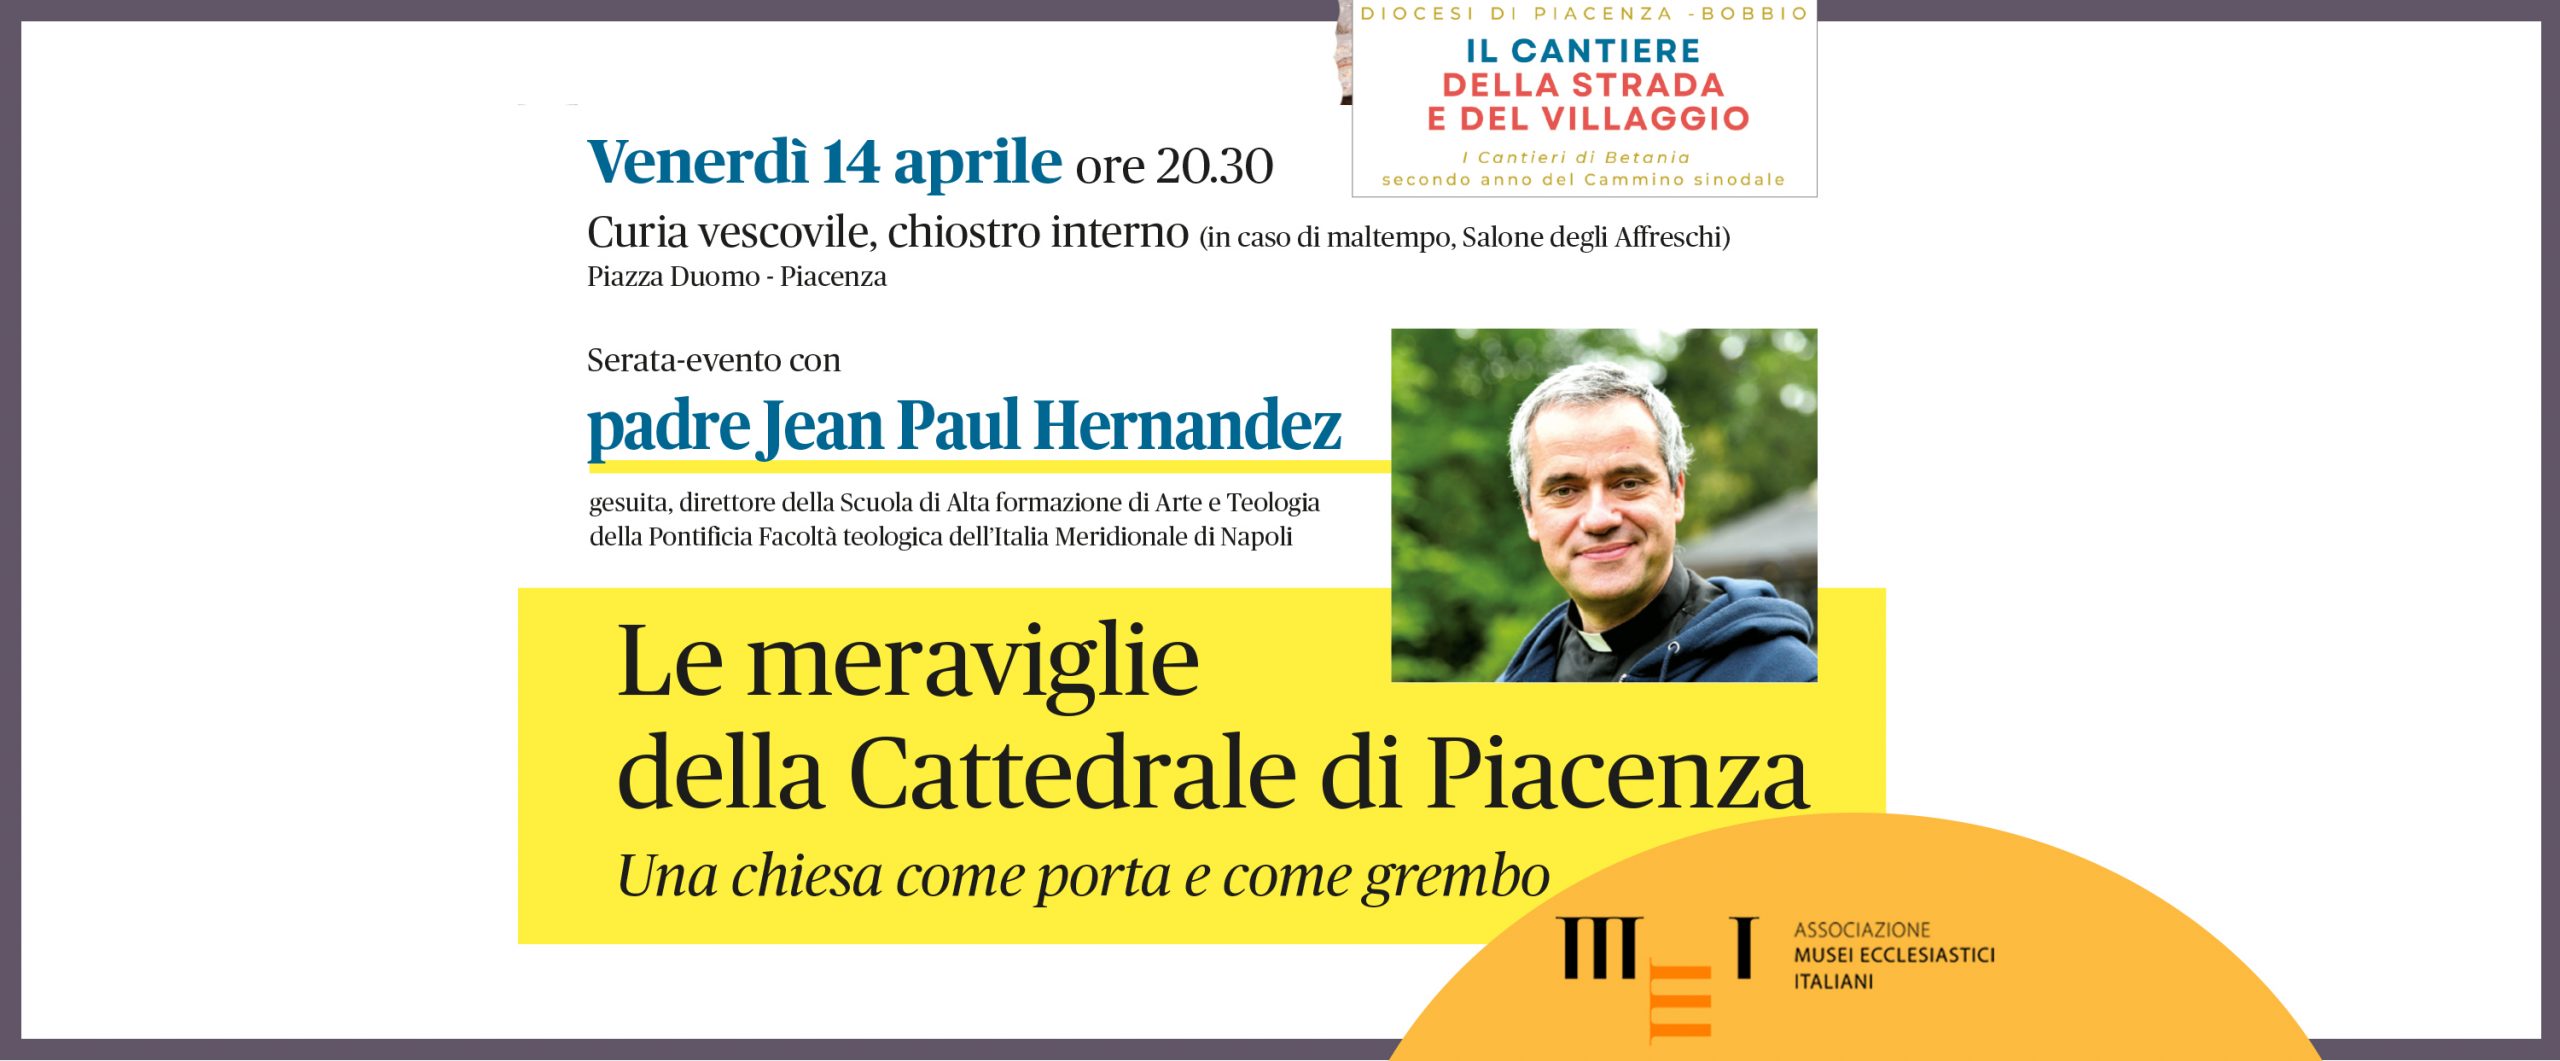 Le meraviglie della Cattedrale di Piacenza, Venerdi 14 aprile 2023. Serata-evento con padre Jean Paul Hernandez